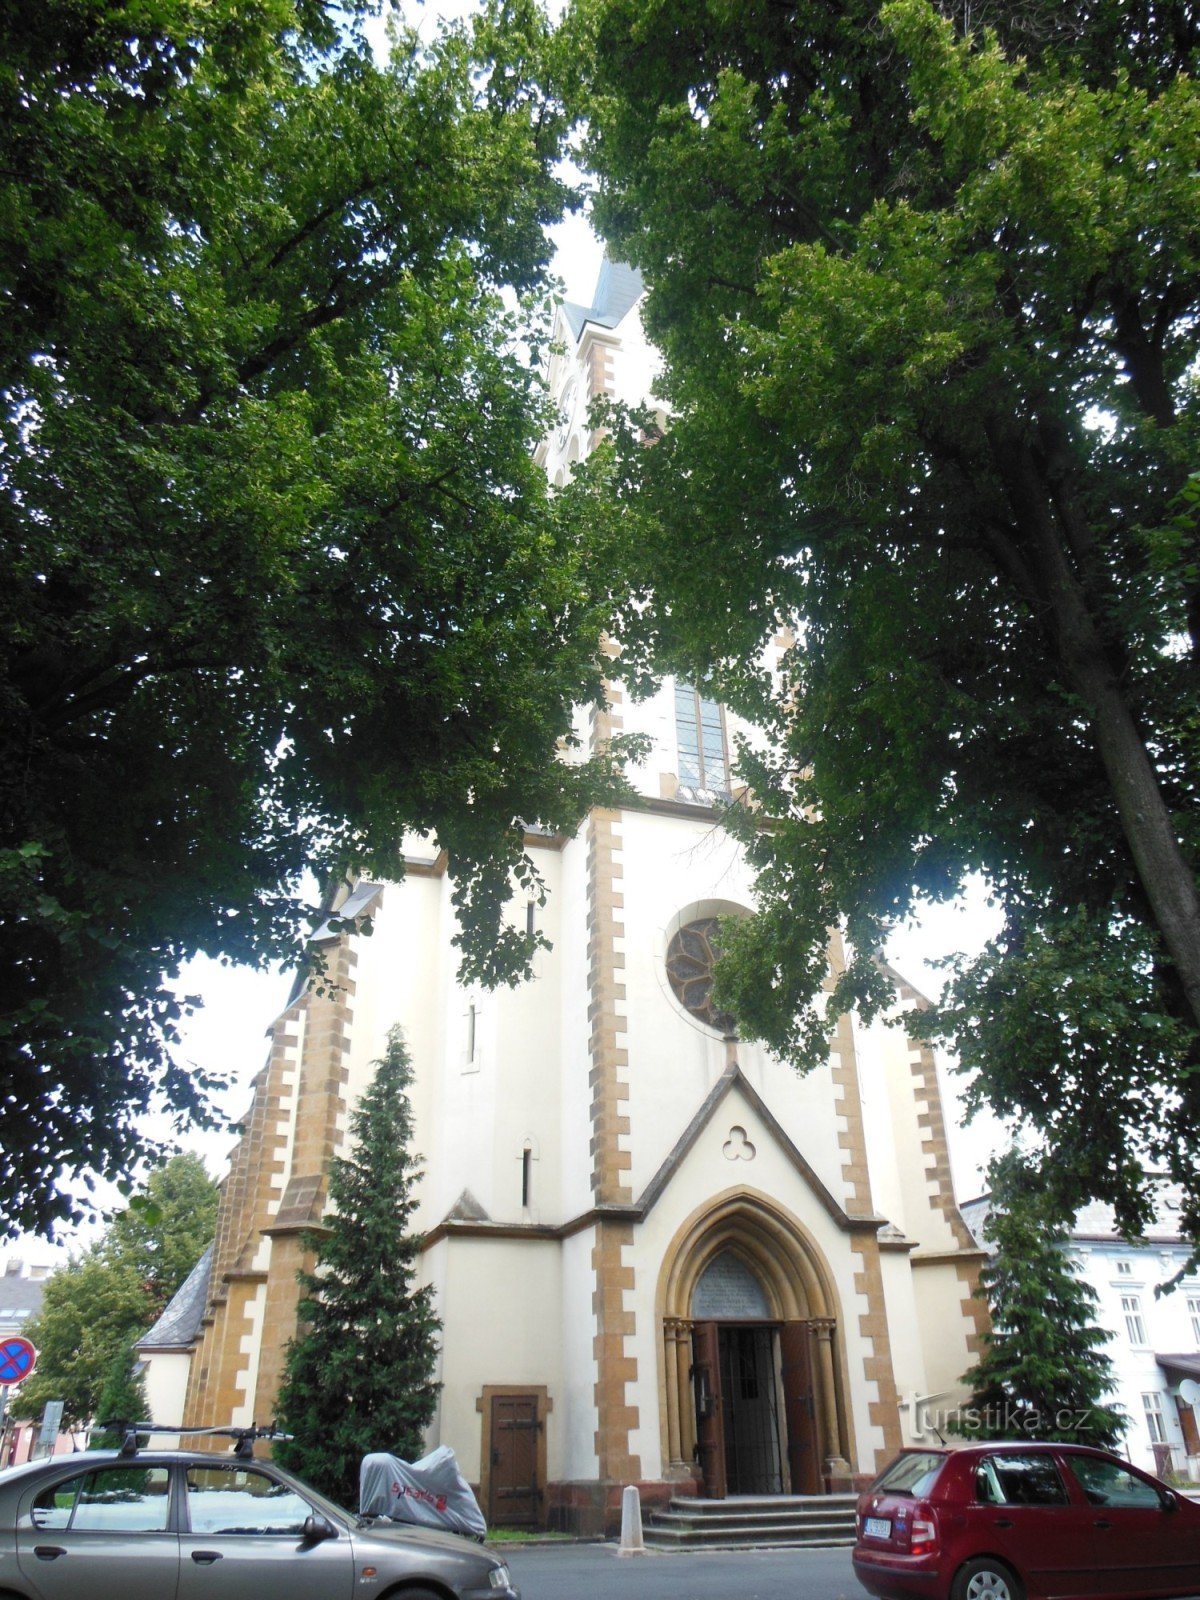 pogled na crkvu kroz stabla lipe Lipový náměstí